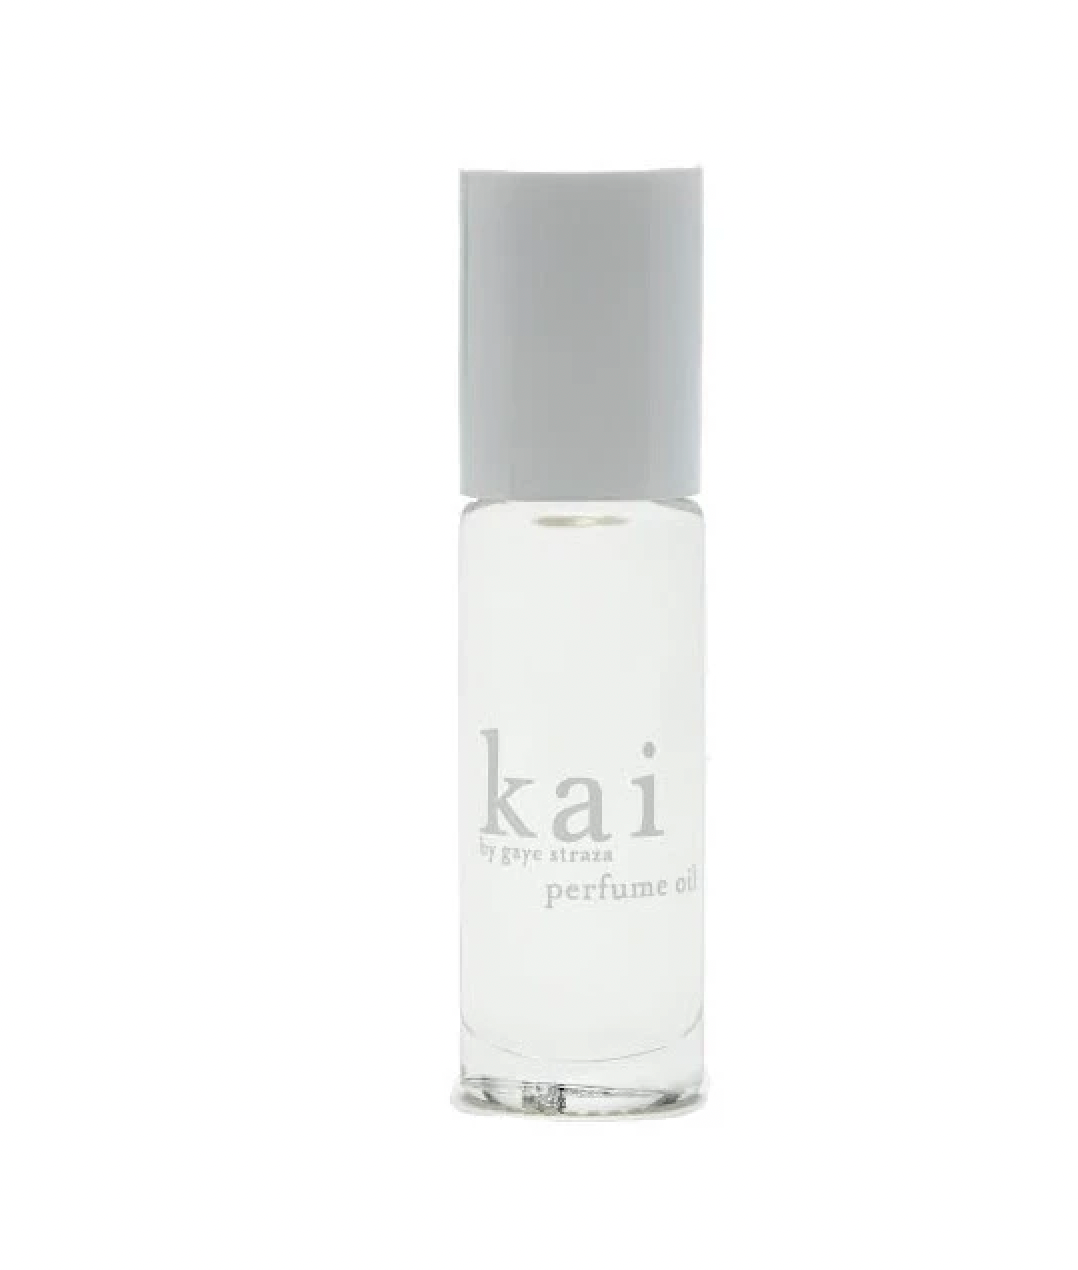 Kai Signature Fragrance Perfume oil